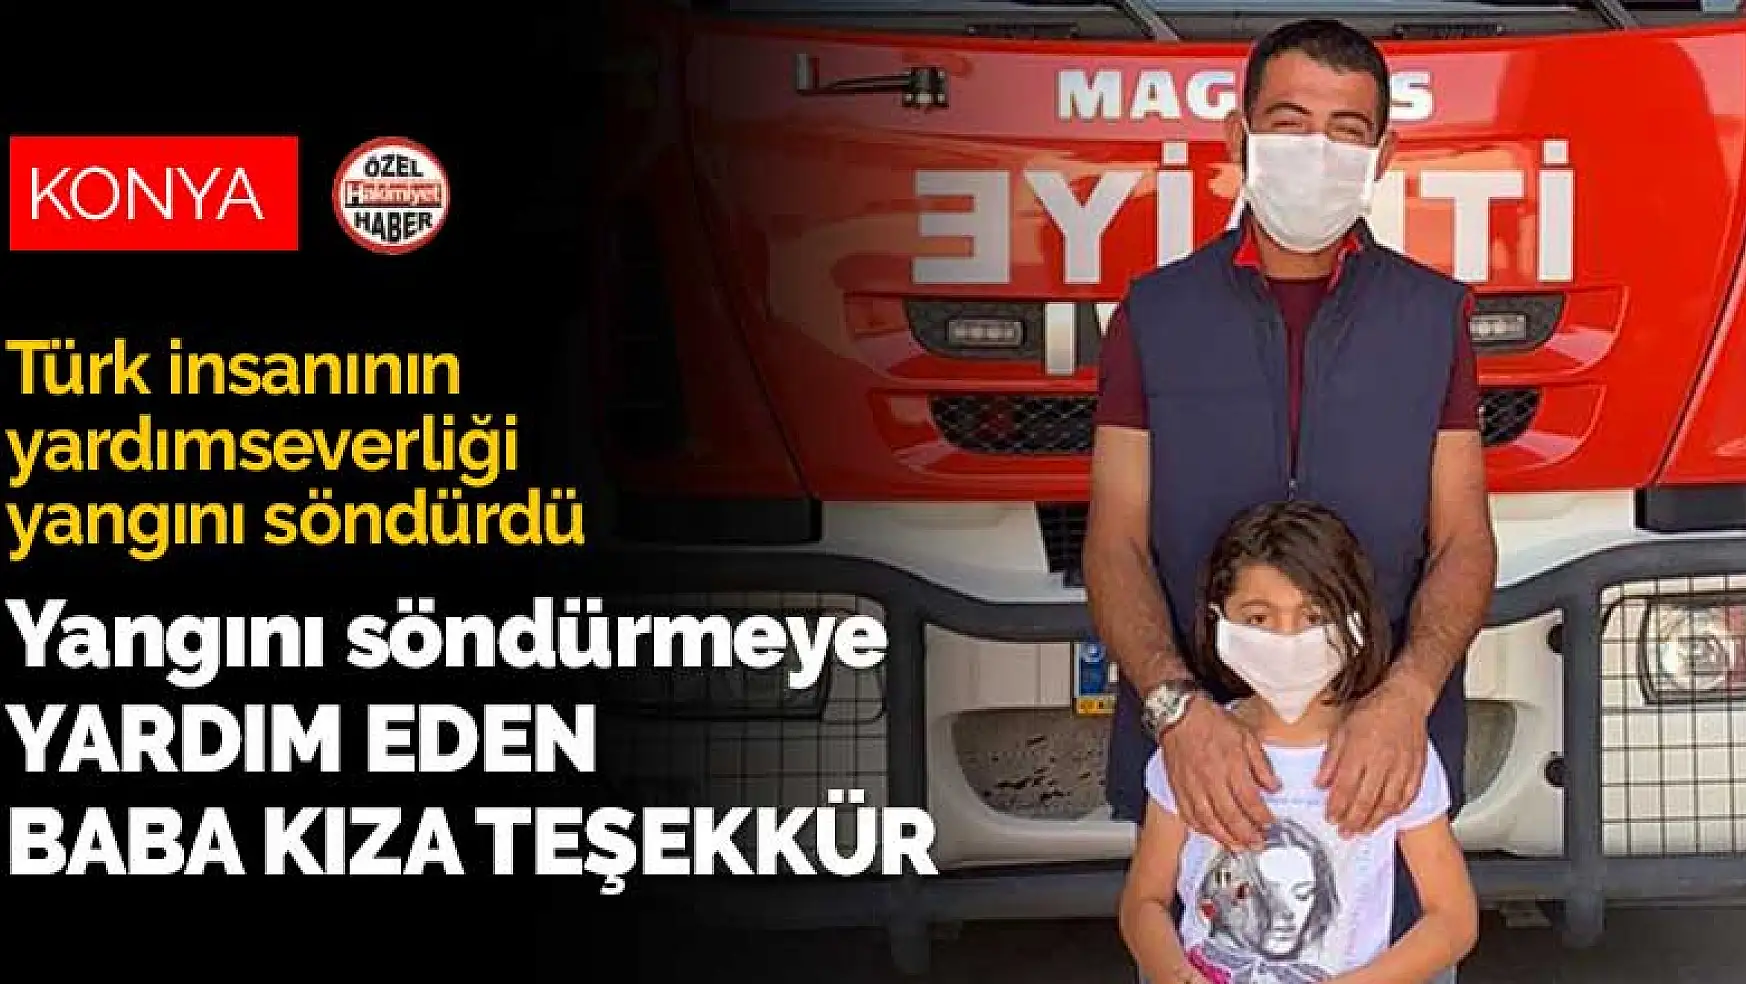 Konya'daki yangını söndürmeye yardım eden baba kıza teşekkür